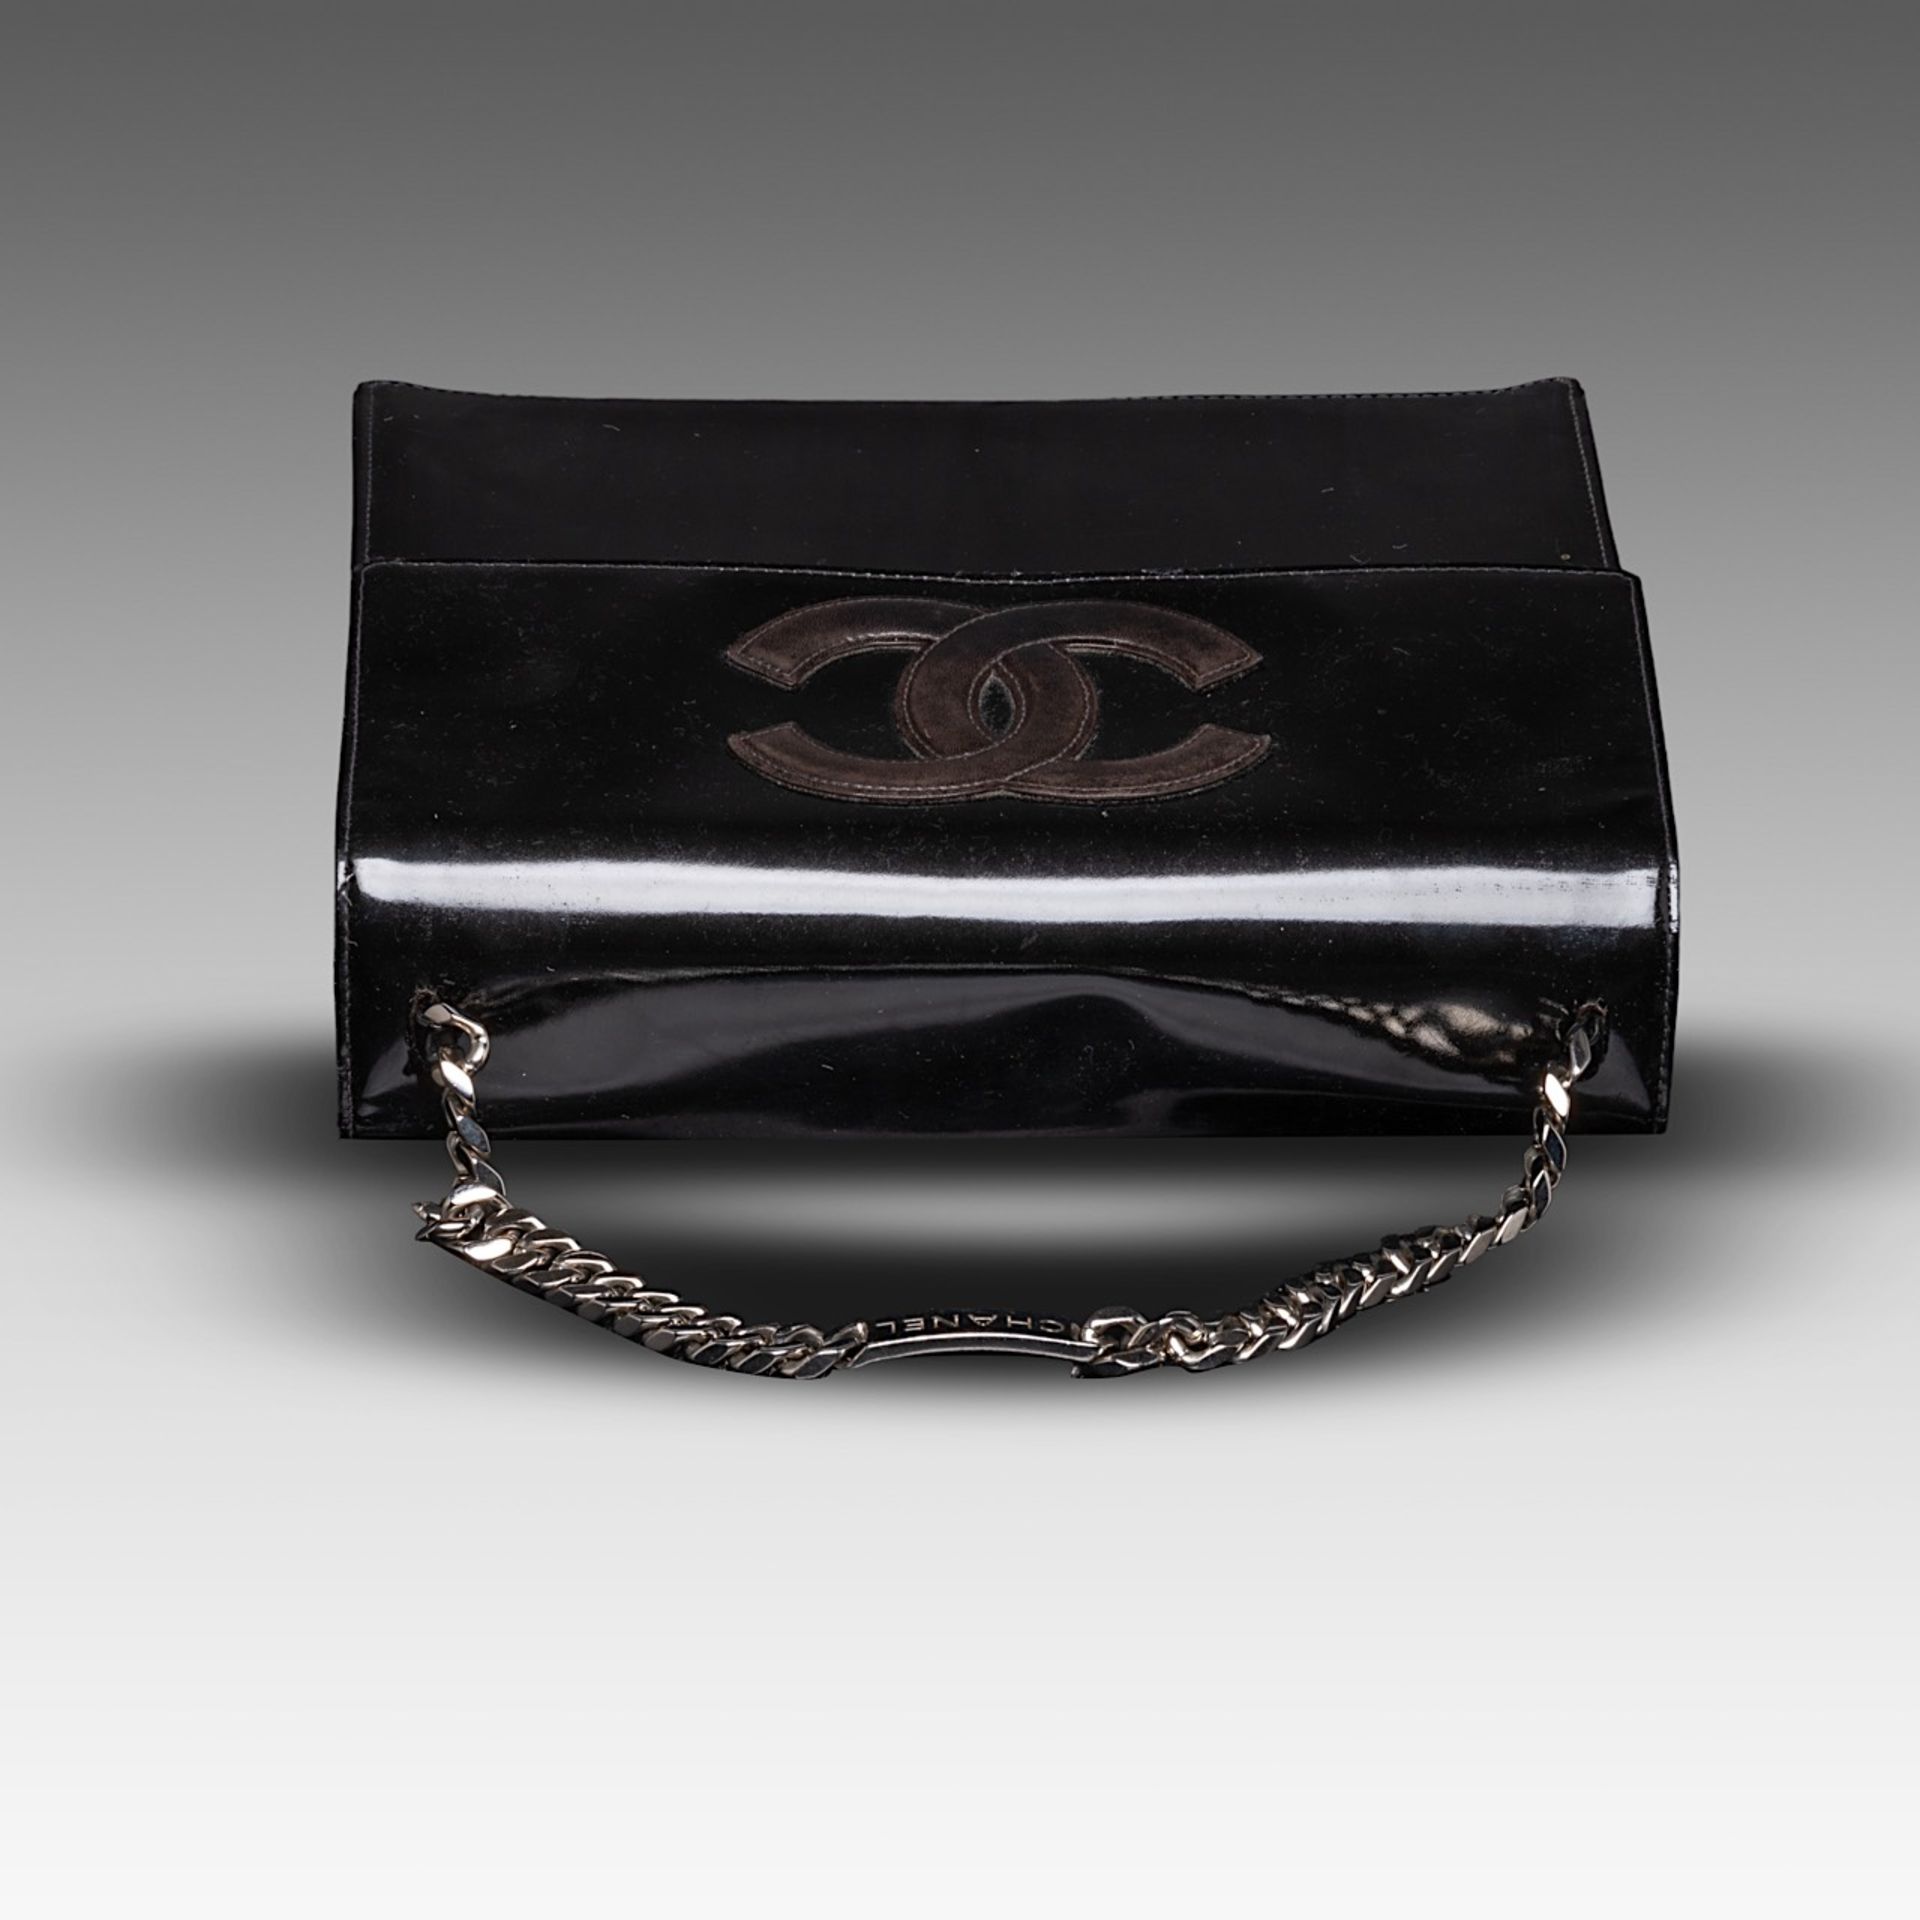 A Chanel flap handbag in black patent leather, H 22 - W 25 - D 8 cm - Bild 8 aus 10